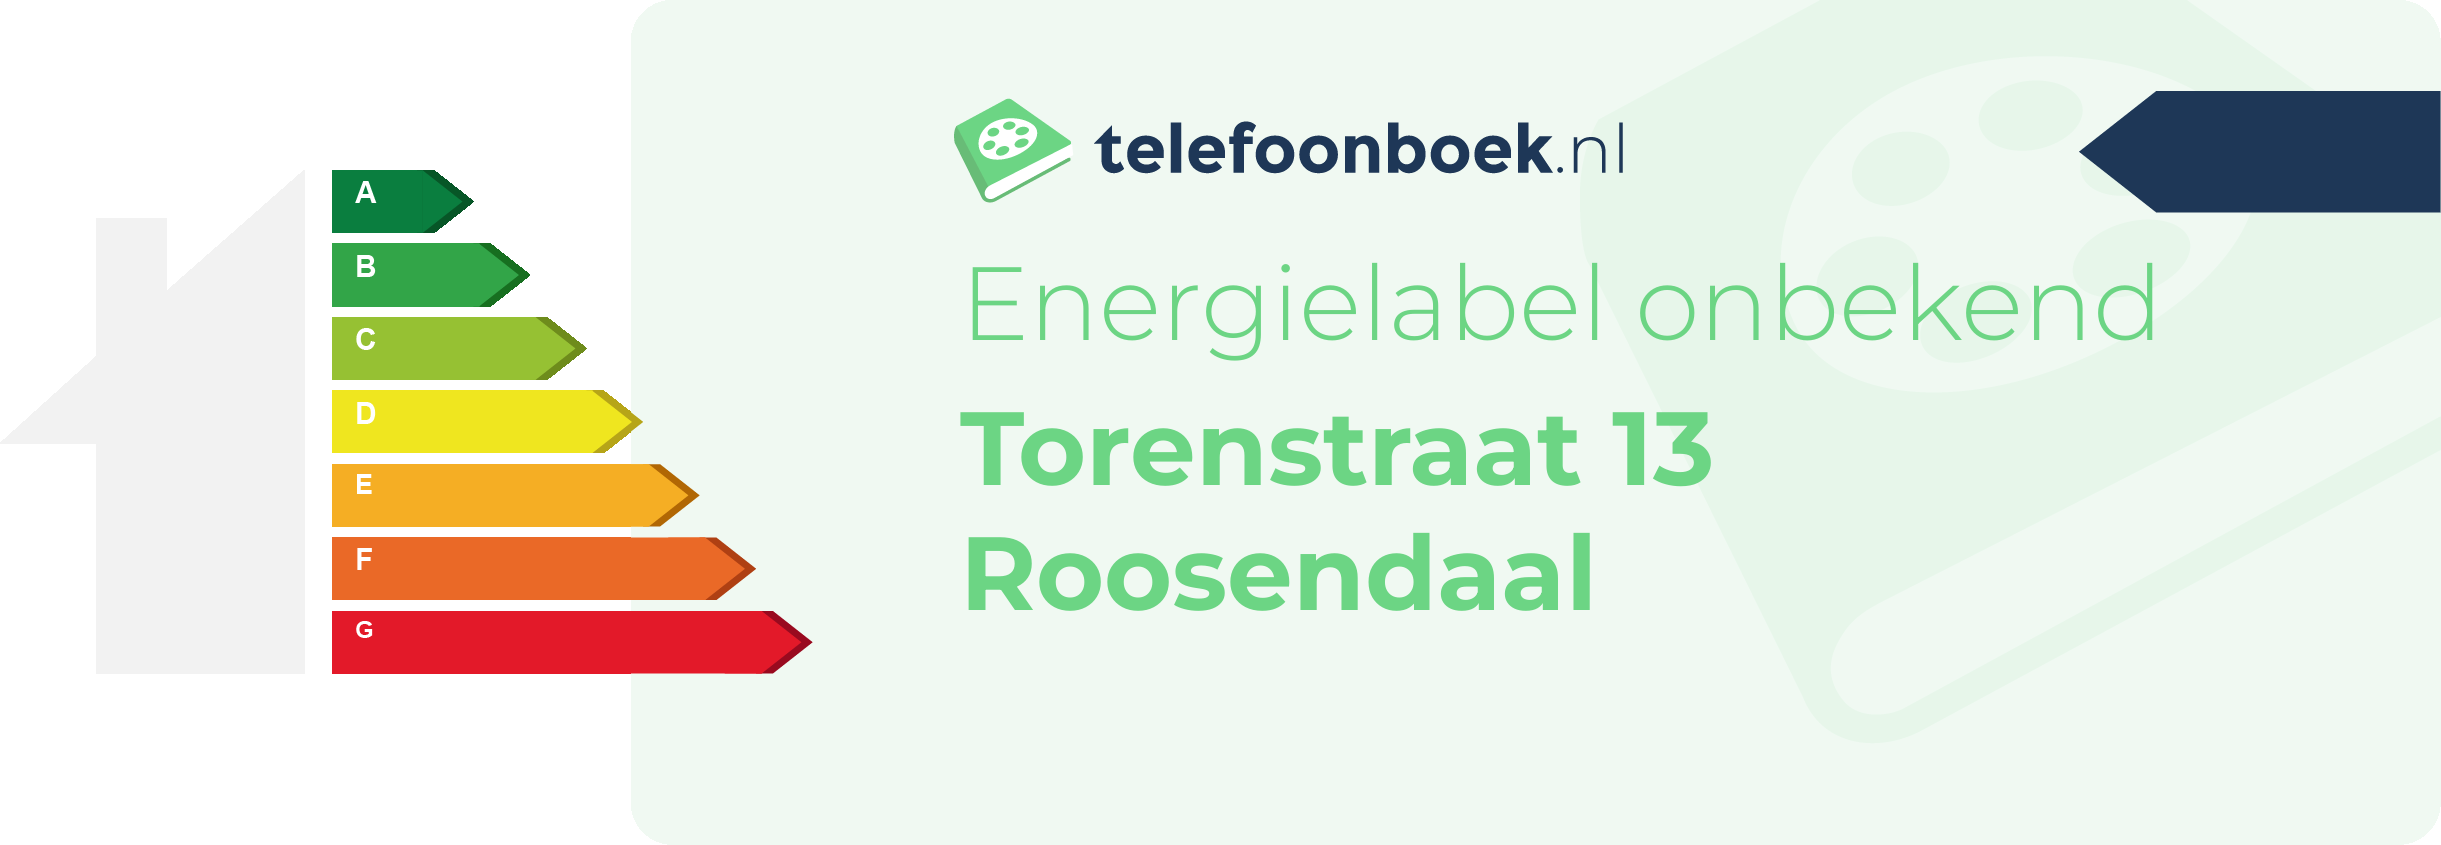 Energielabel Torenstraat 13 Roosendaal